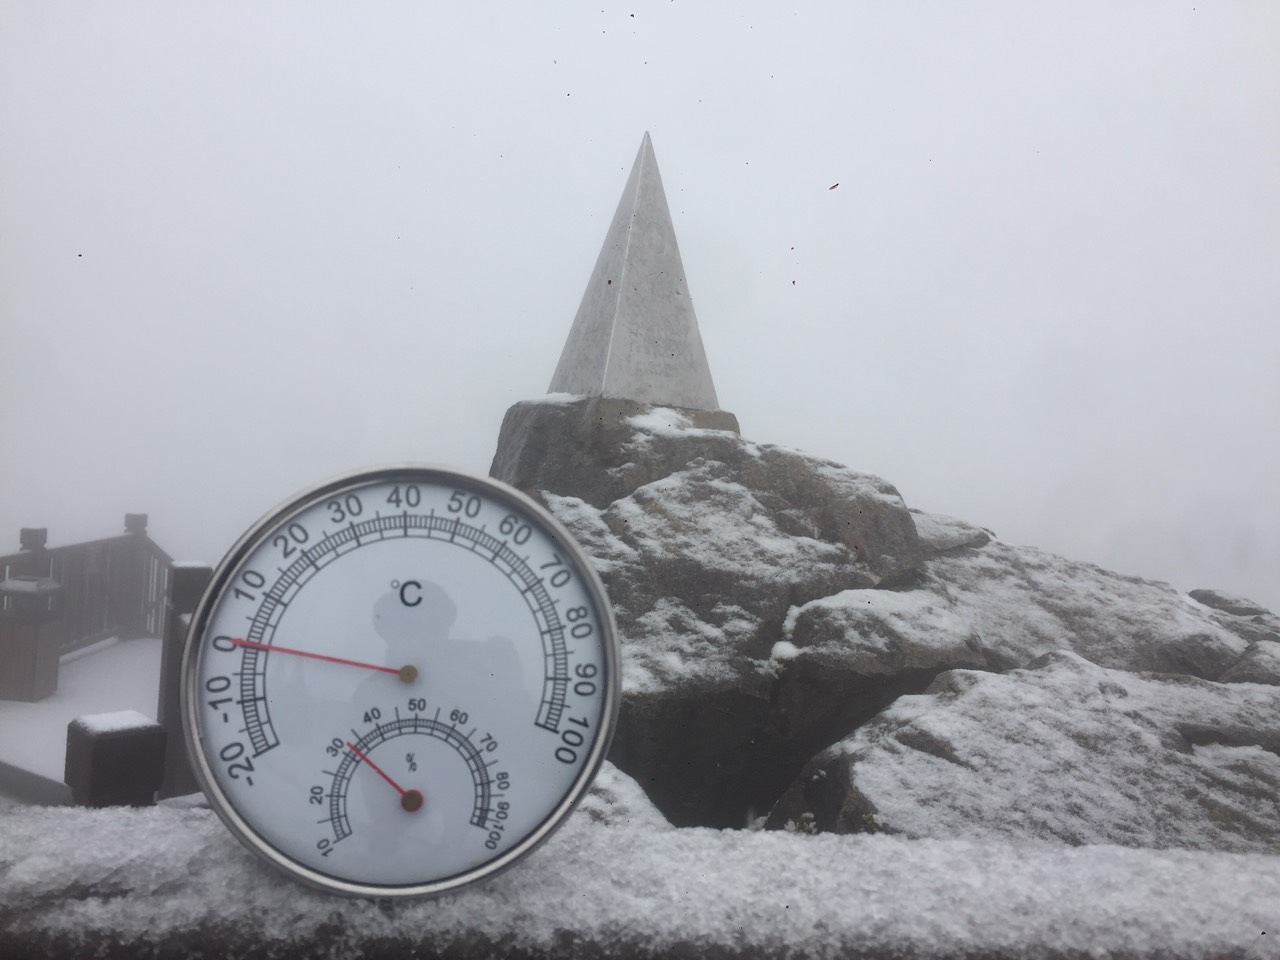 Nhiệt độ hiện tại trên đỉnh Fansipan là 0 độ C